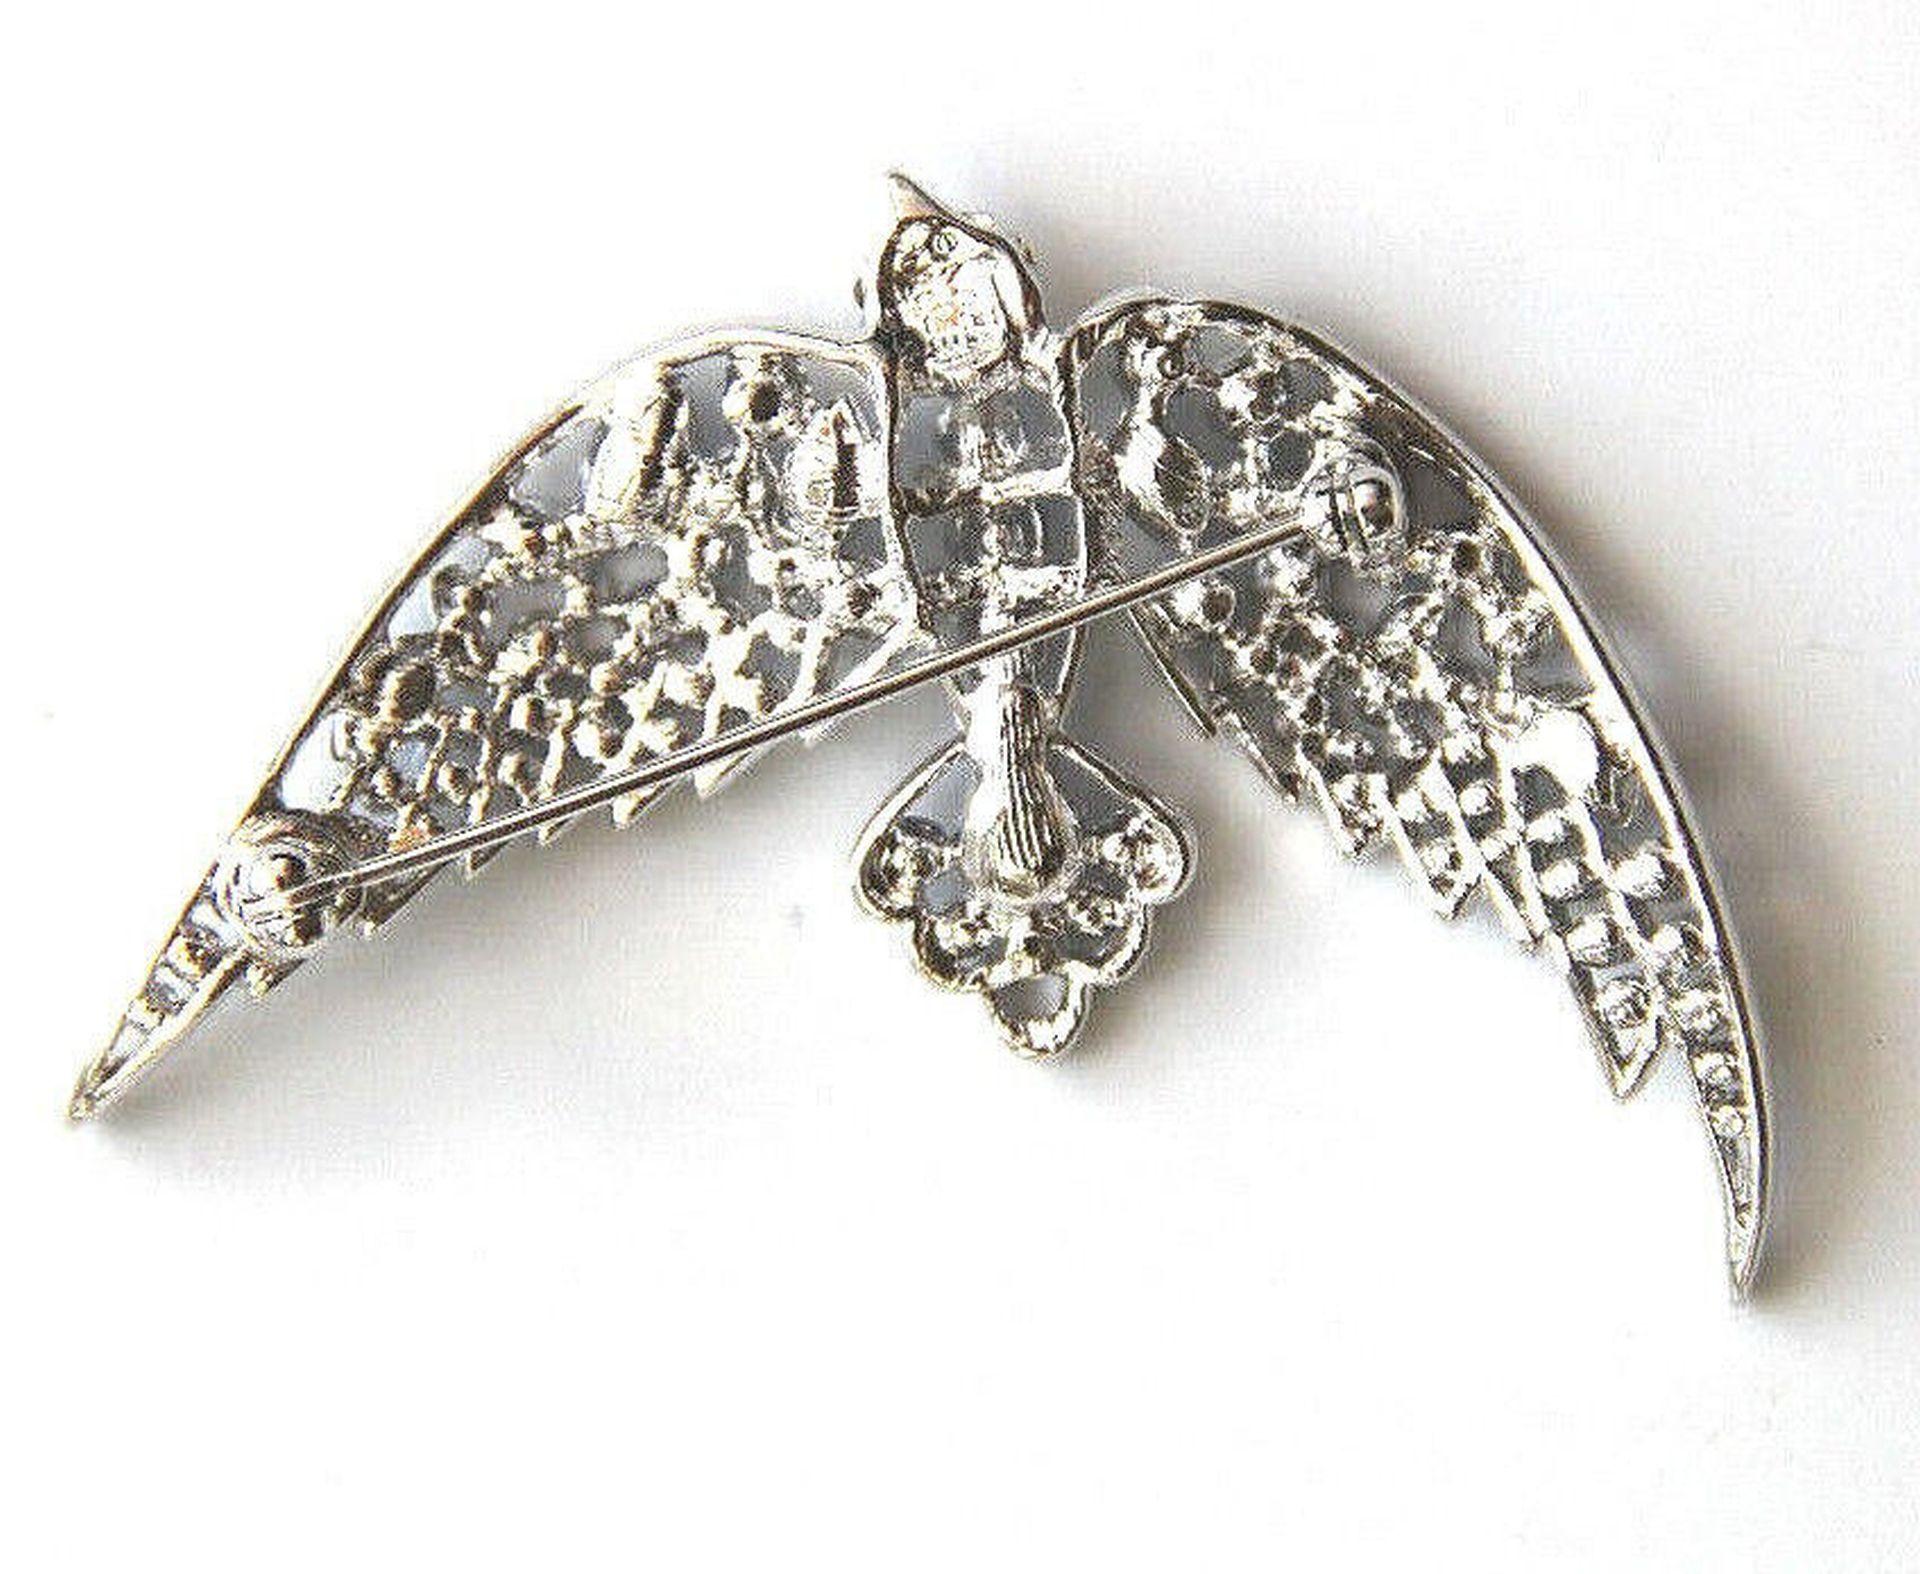 Modernist Nolan Miller Signed Designer Crystal Bird in Flight Vintage Brooch Pin For Sale